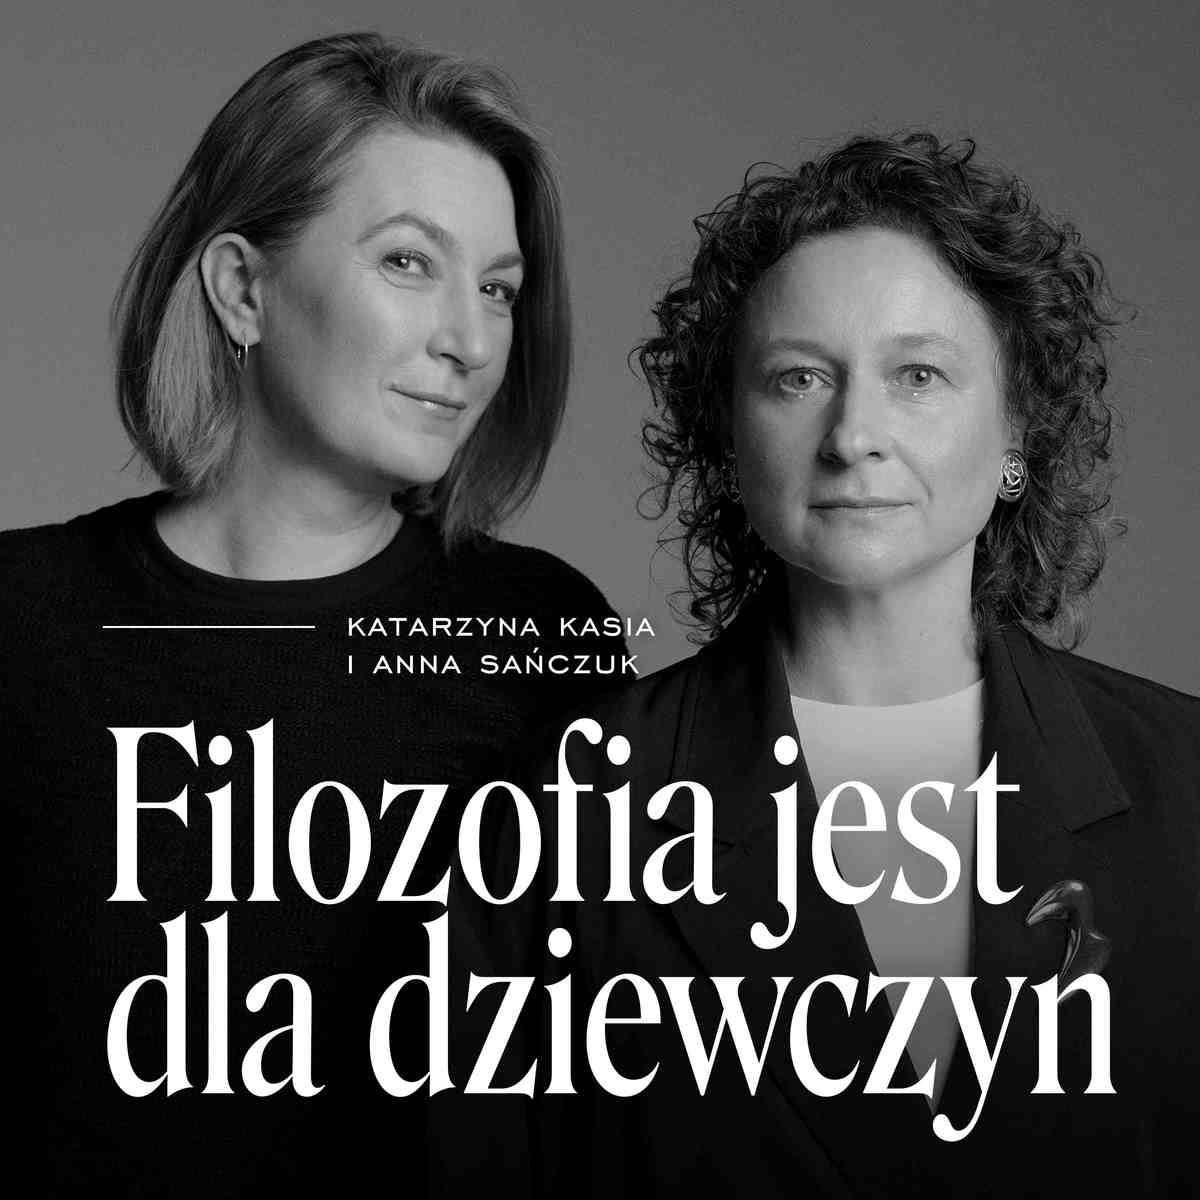 W nowym podcaście „Filozofia jest dla dziewczyn” Anna Sańczuk i Katarzyna Kasia rozmawiają o filozofii z  kobeicej perstektywy.